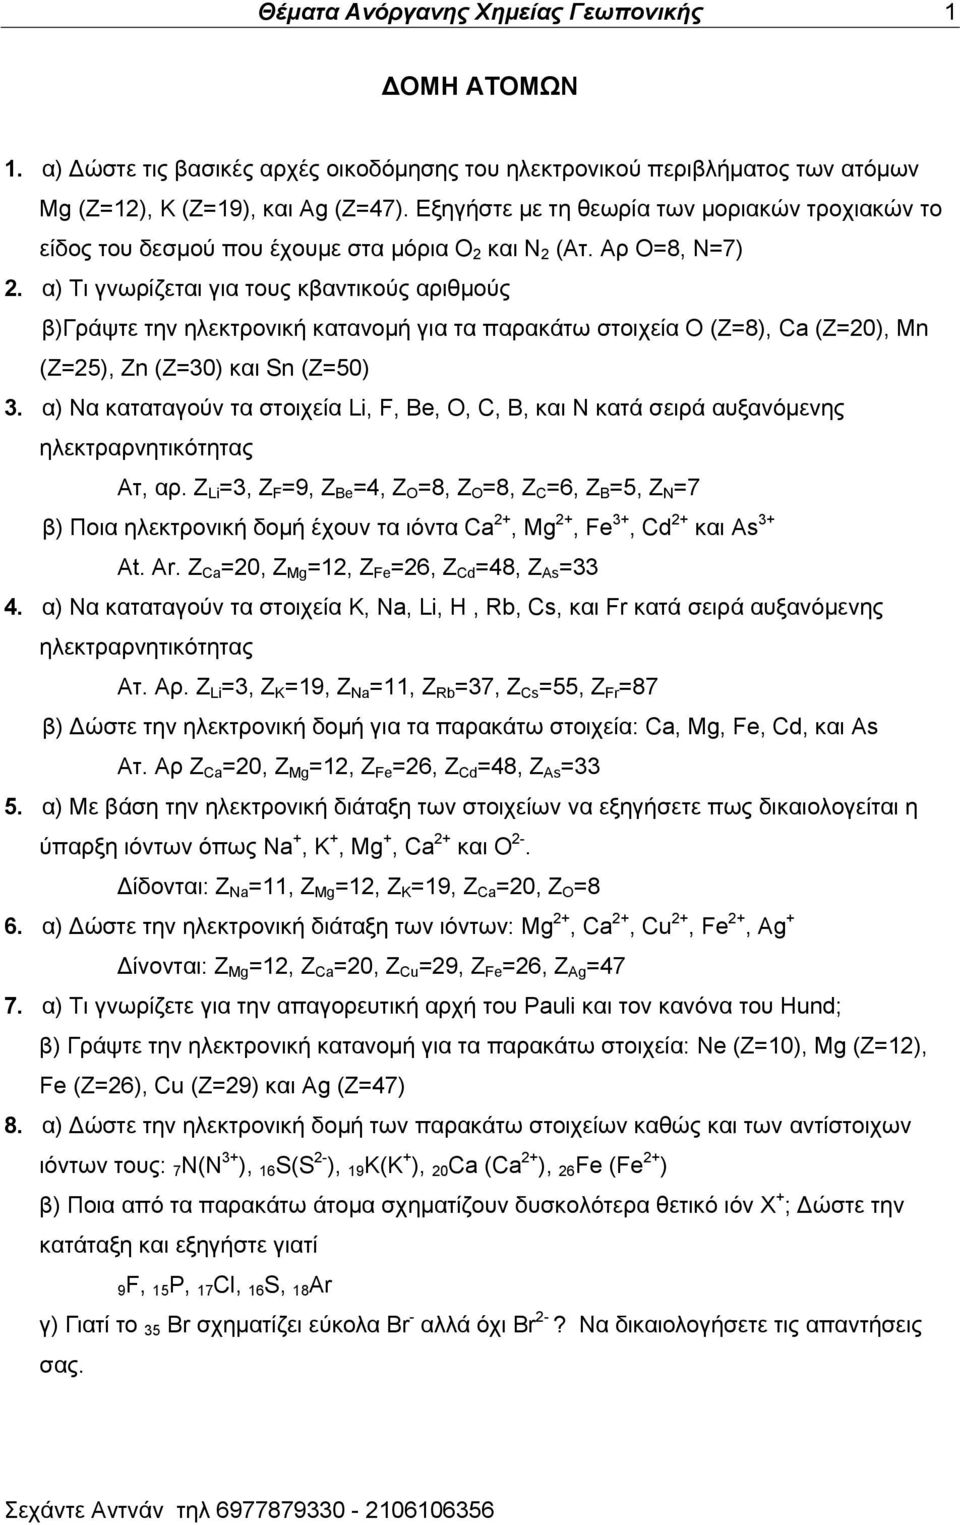 α) Σζ βκςνίγεηαζ βζα ημοξ ηαακηζημφξ ανζειμφξ α)γνάρηε ηδκ δθεηηνμκζηή ηαηακμιή βζα ηα παναηάης ζημζπεία Ο (Ε=8), Ca (Z=20), Mn (Z=25), Zn (Z=30) ηαζ Sn (Z=50) 3.